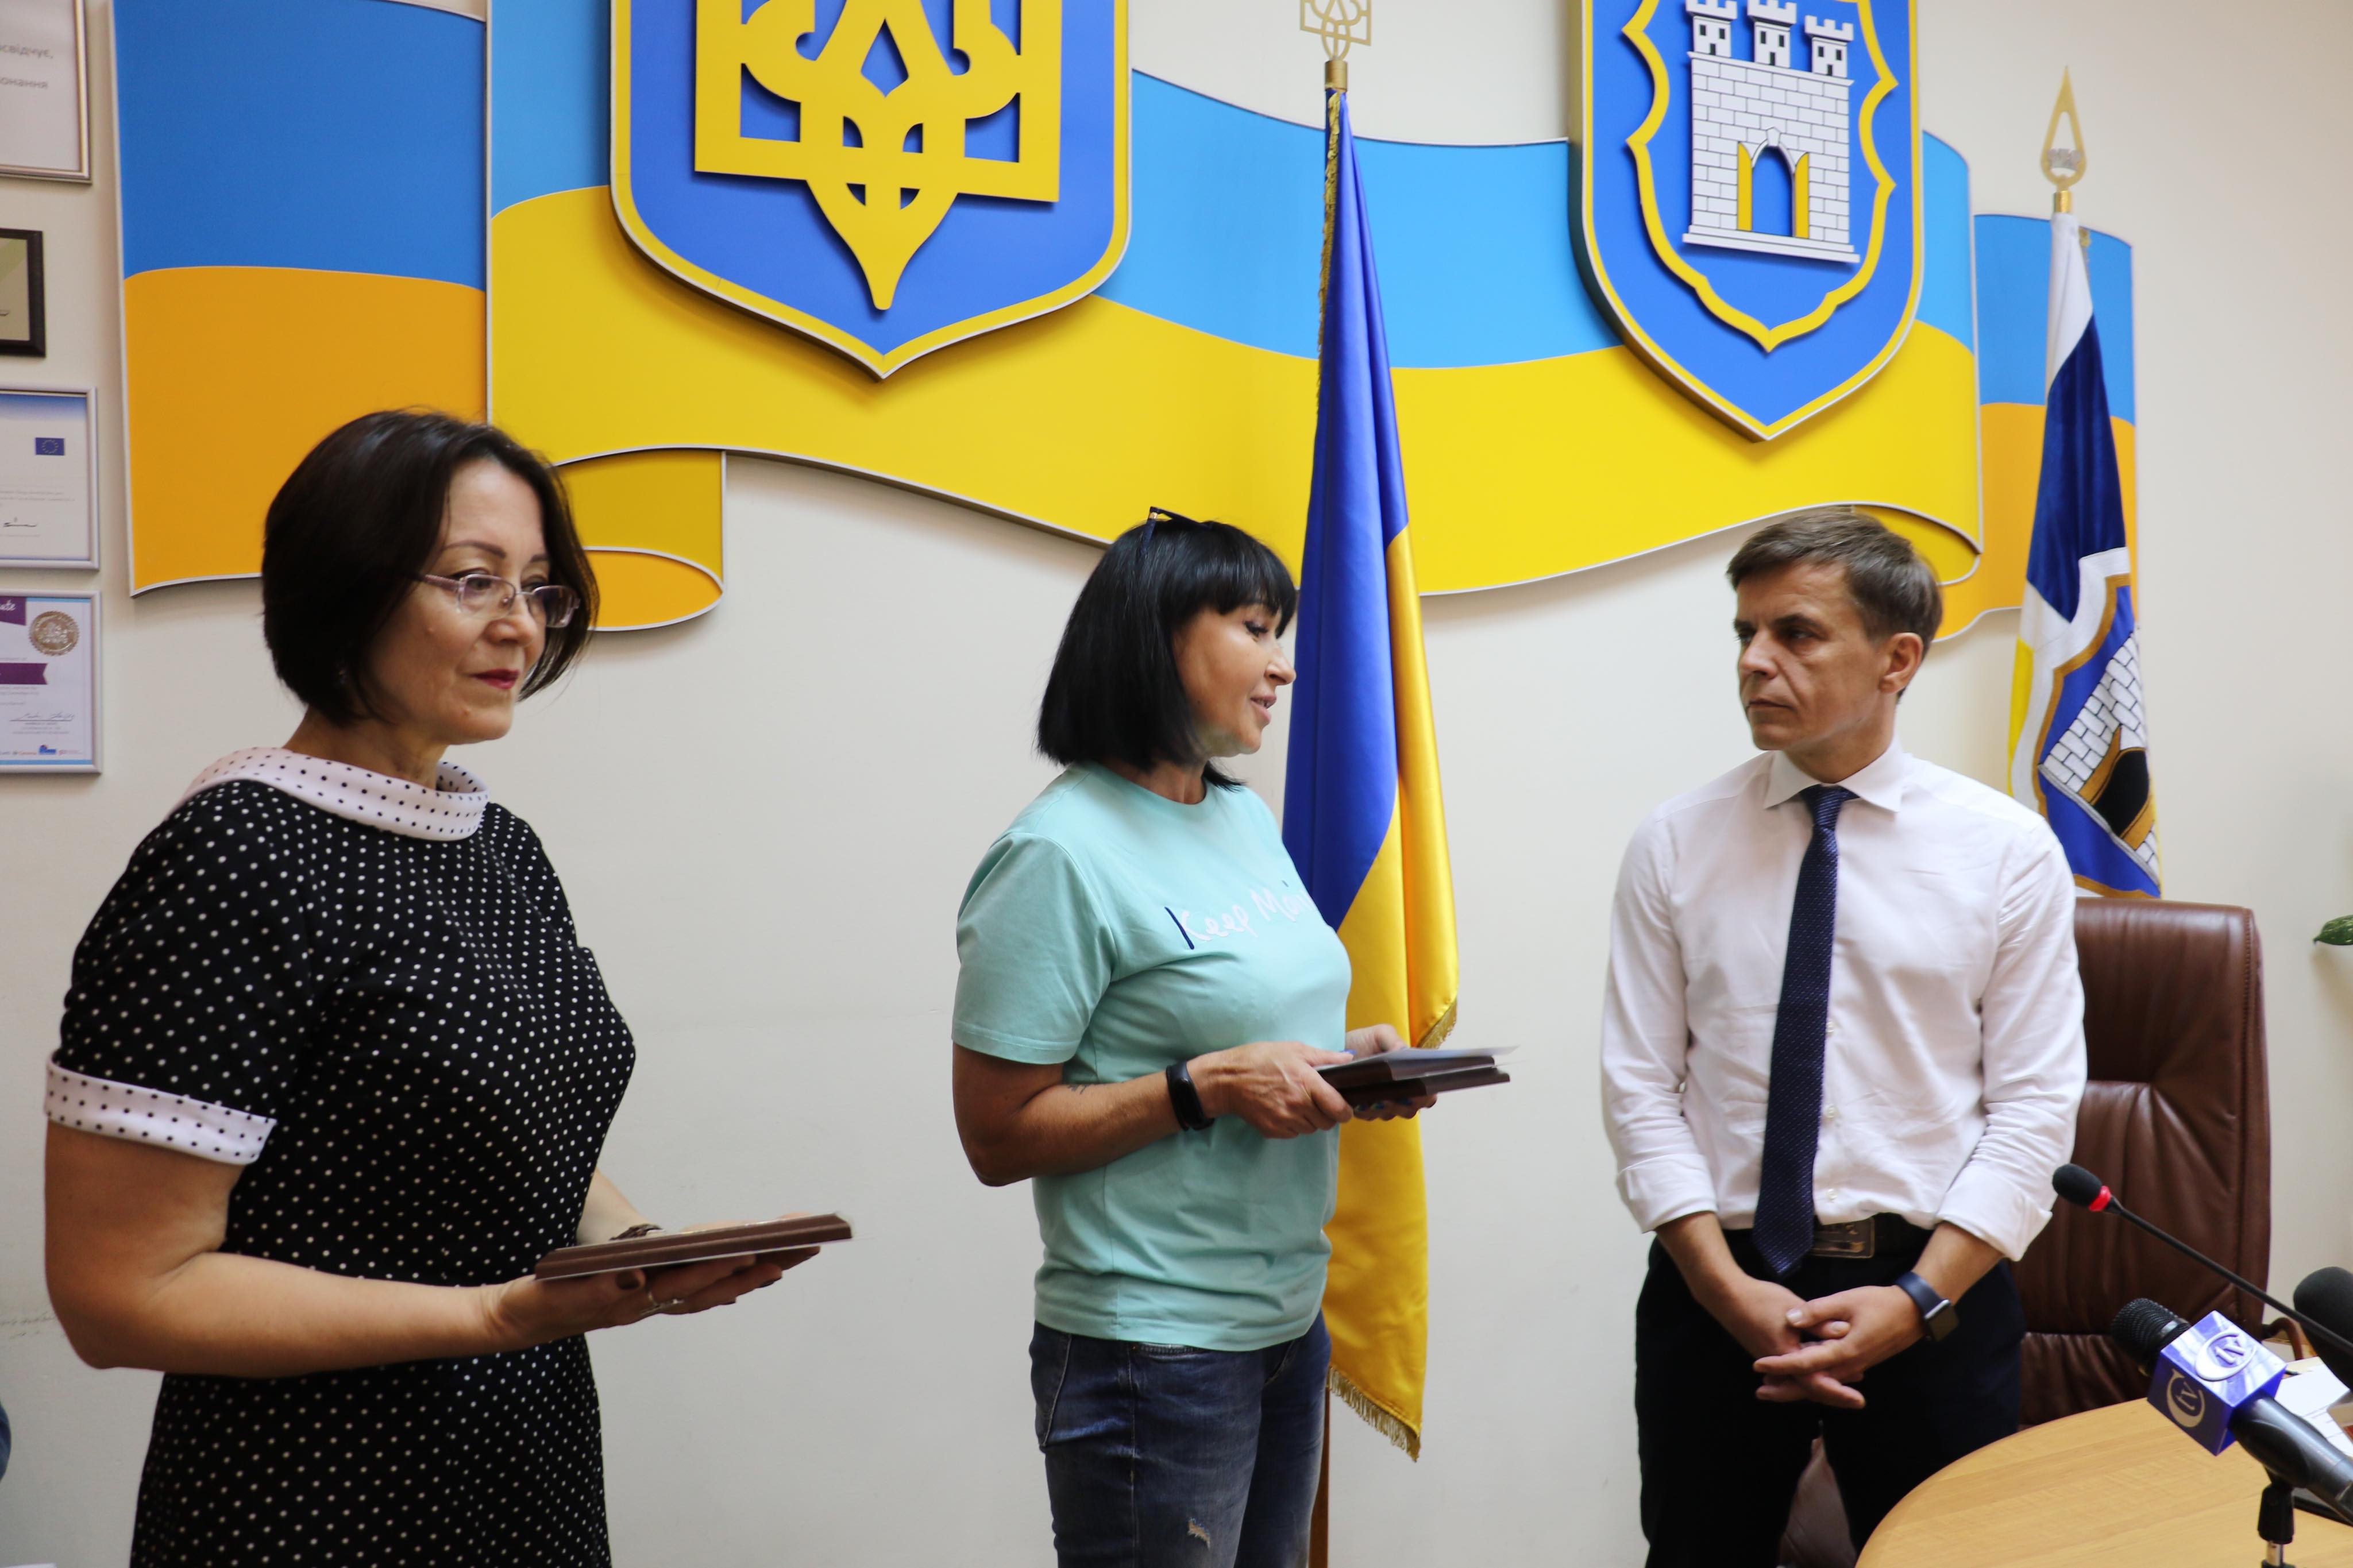 Міський голова вручив подяки волонтерам українських діаспор країн Європи